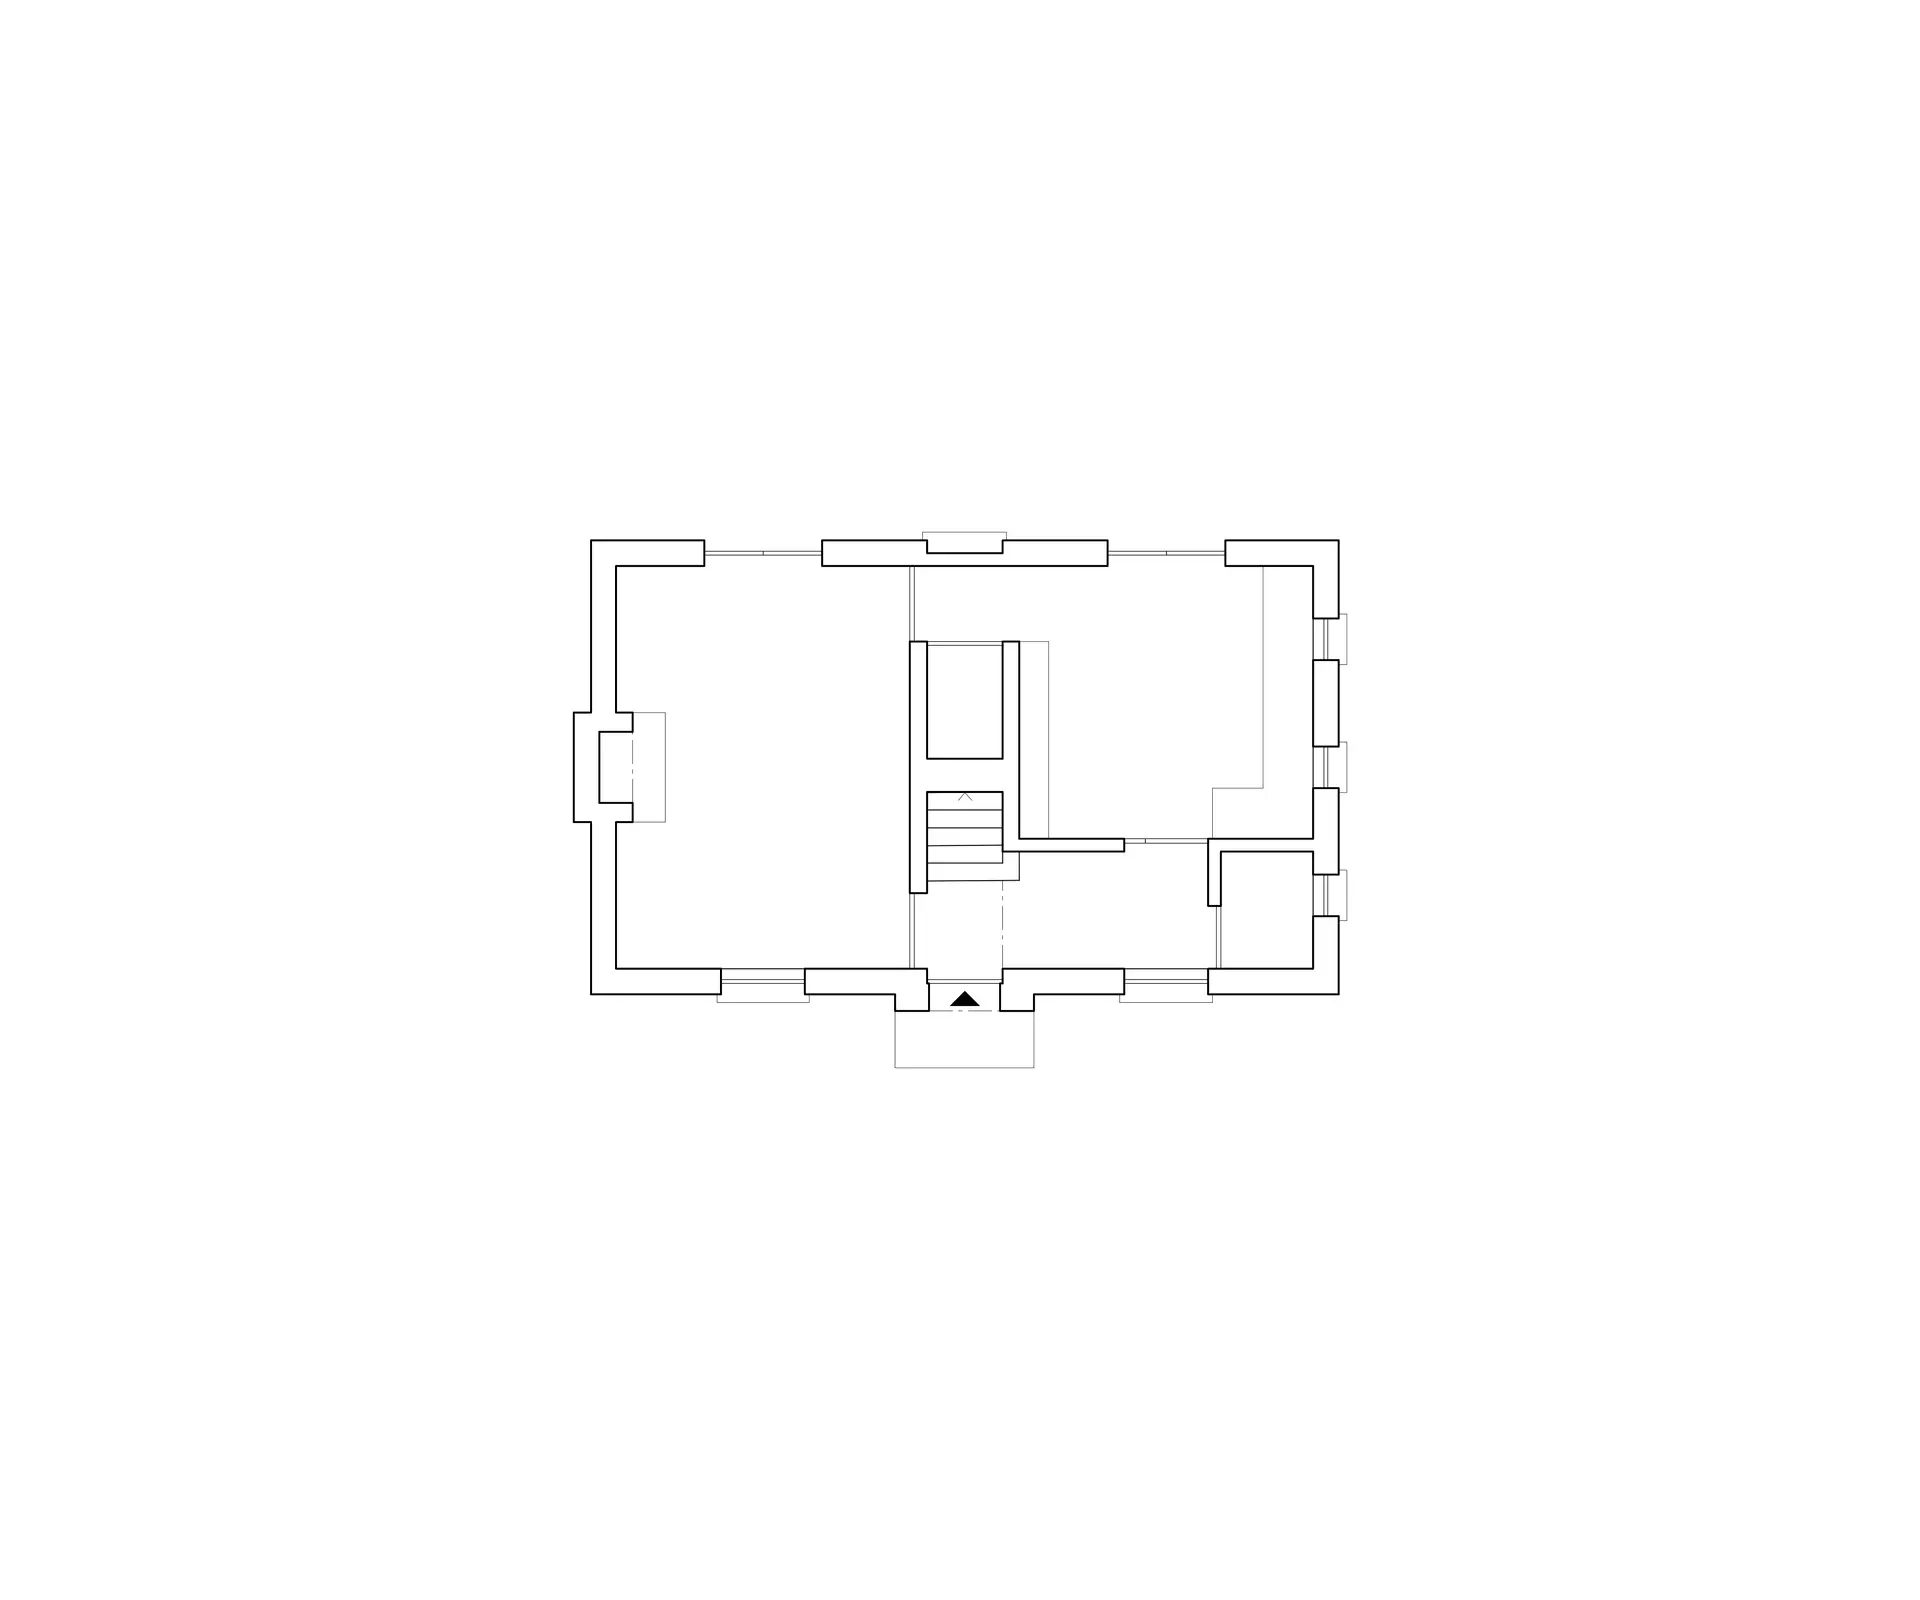 Cottage ground floor plan